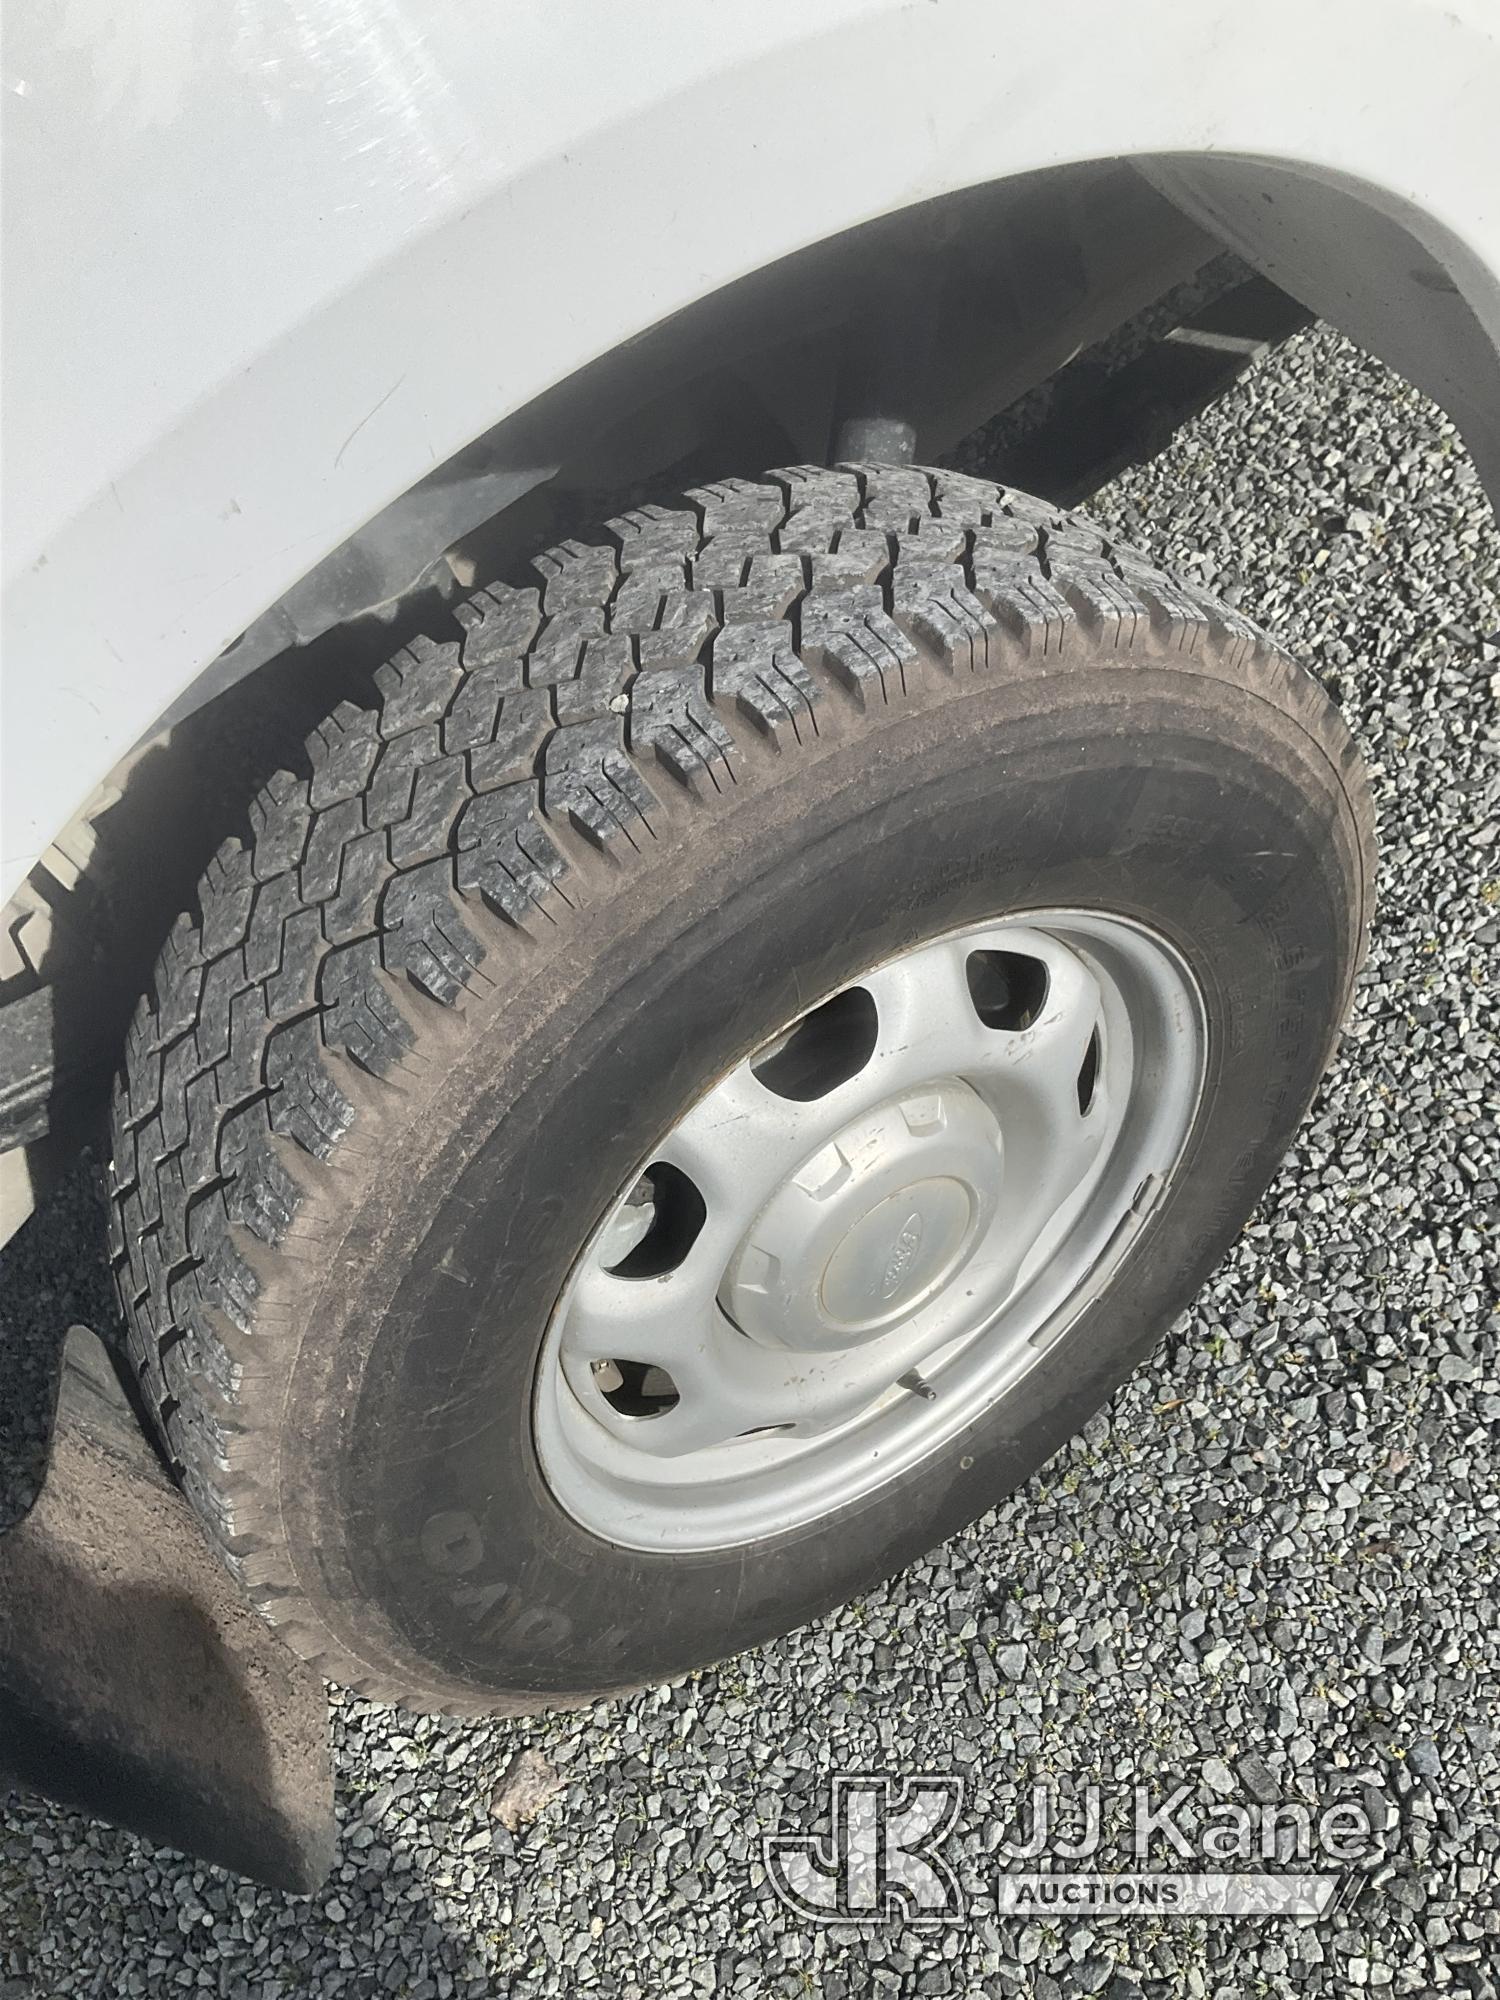 (Eatonville, WA) 2019 Ford F150 Crew-Cab Pickup Truck Runs & Moves) (Tires Are Good,  Severe Body Da